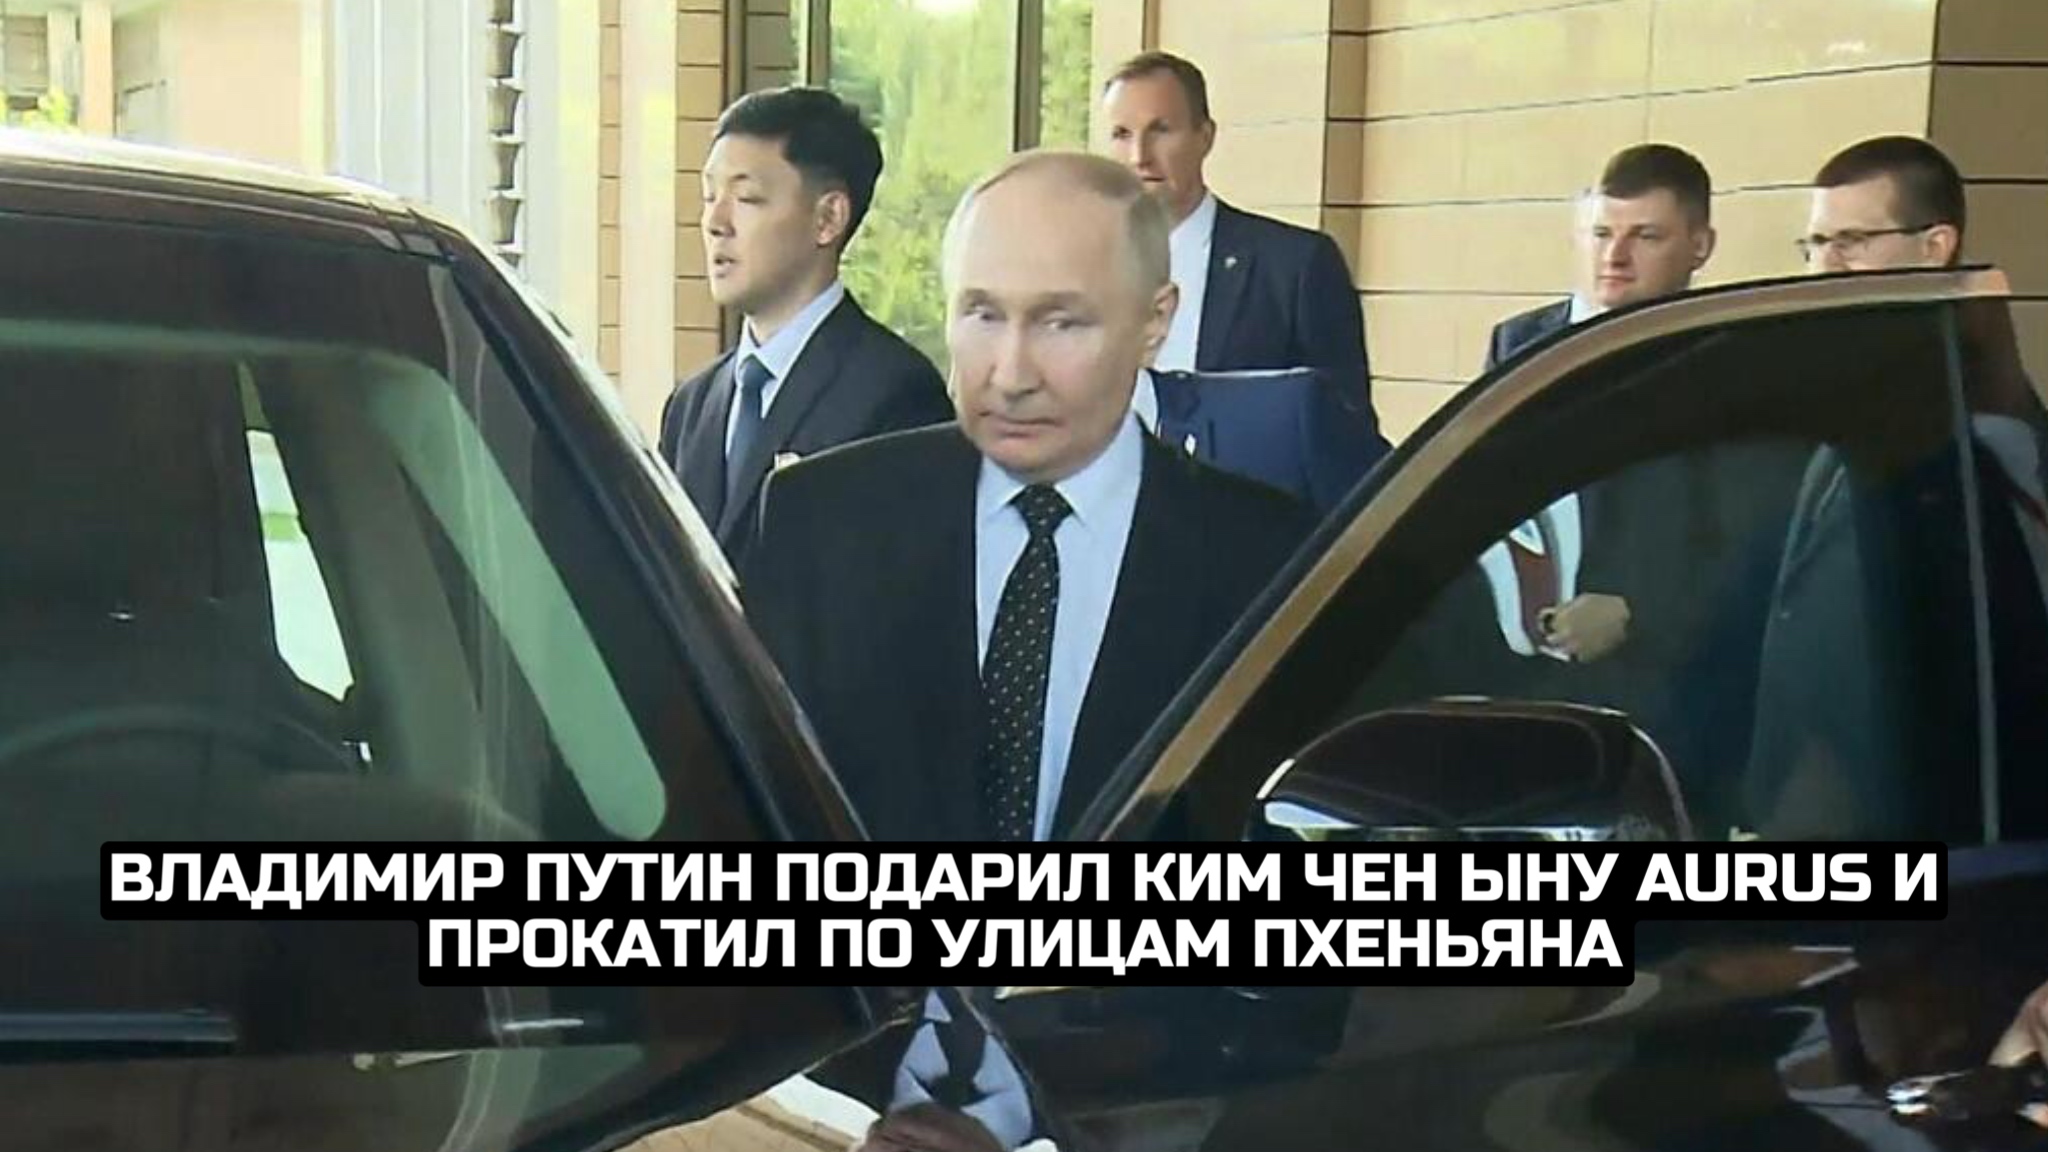 Владимир Путин подарил Ким Чен Ыну Aurus и прокатил по улицам Пхеньяна